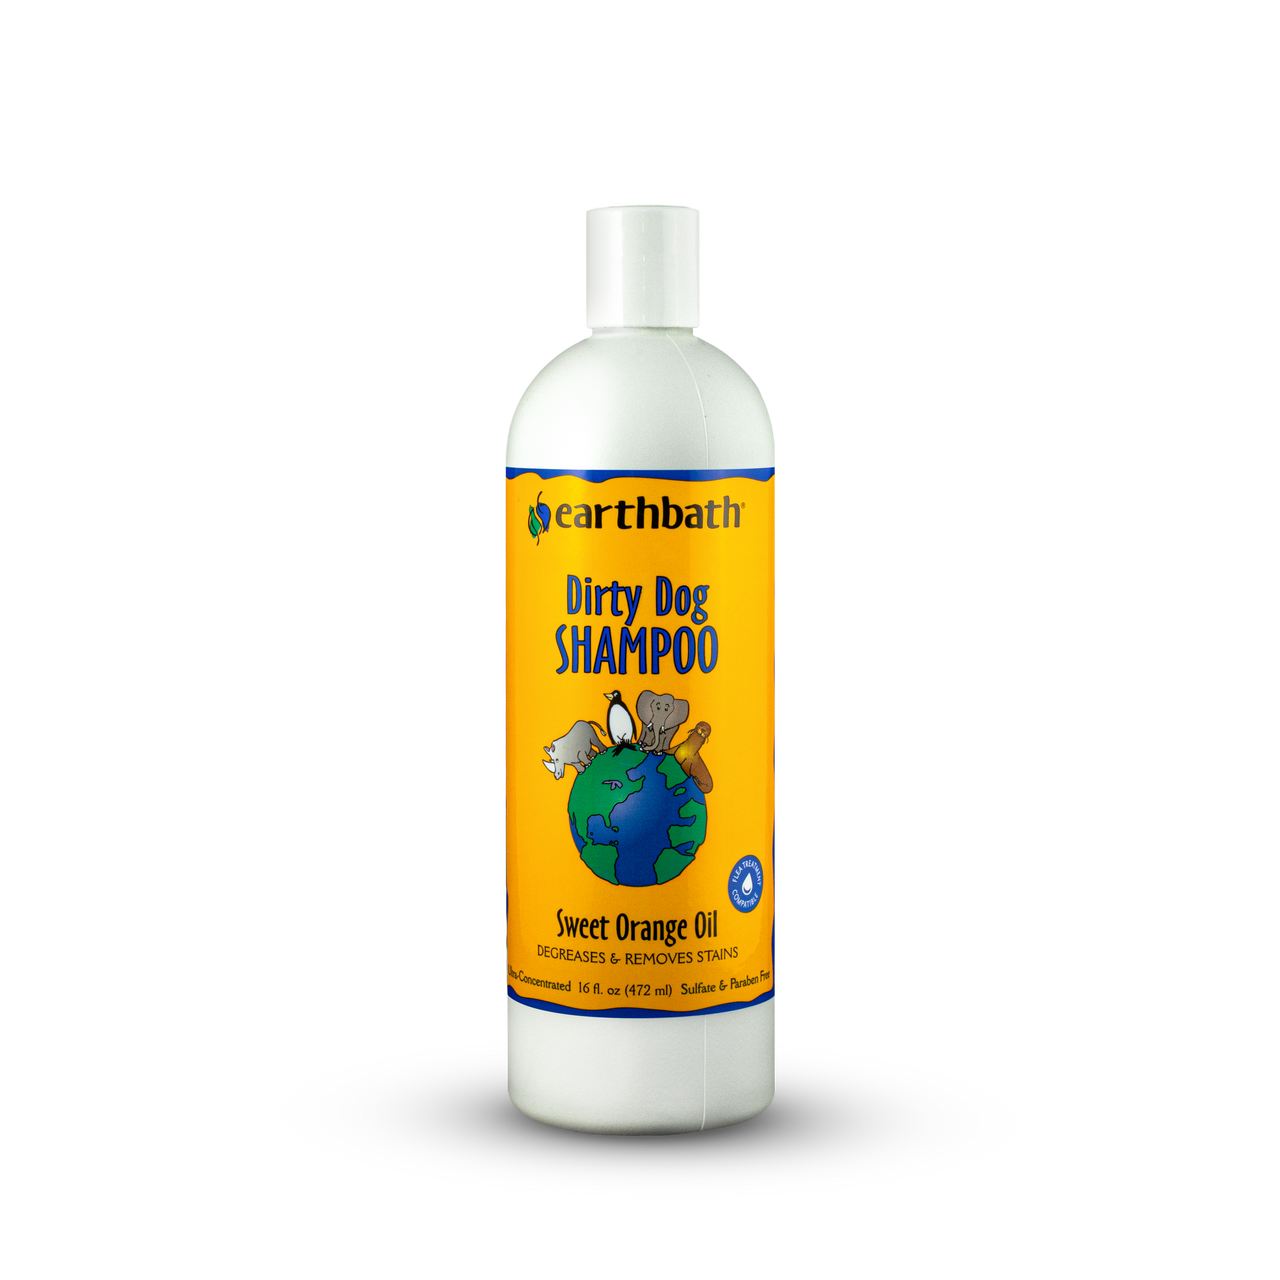 Earthbath Dirty Dog Shampoo, Sweet Orange Oil 16oz